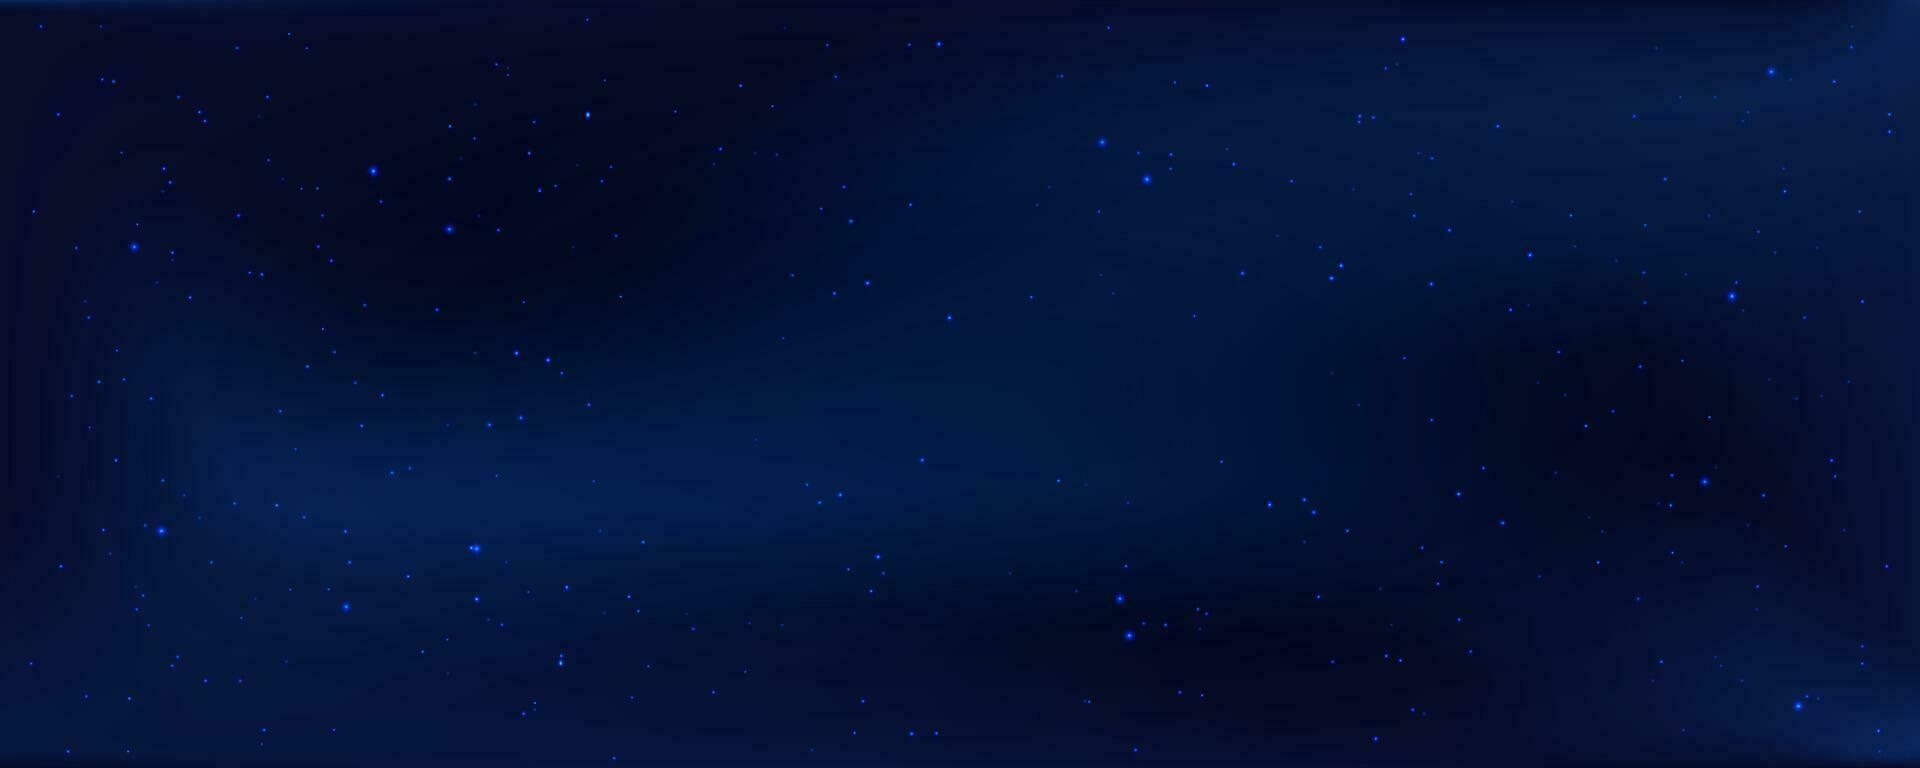 begrepp av webb baner. magi Färg galax. horisontell Plats bakgrund med realistisk nebulosa, stardust och lysande stjärnor. oändlig universum och starry natt himmel vektor